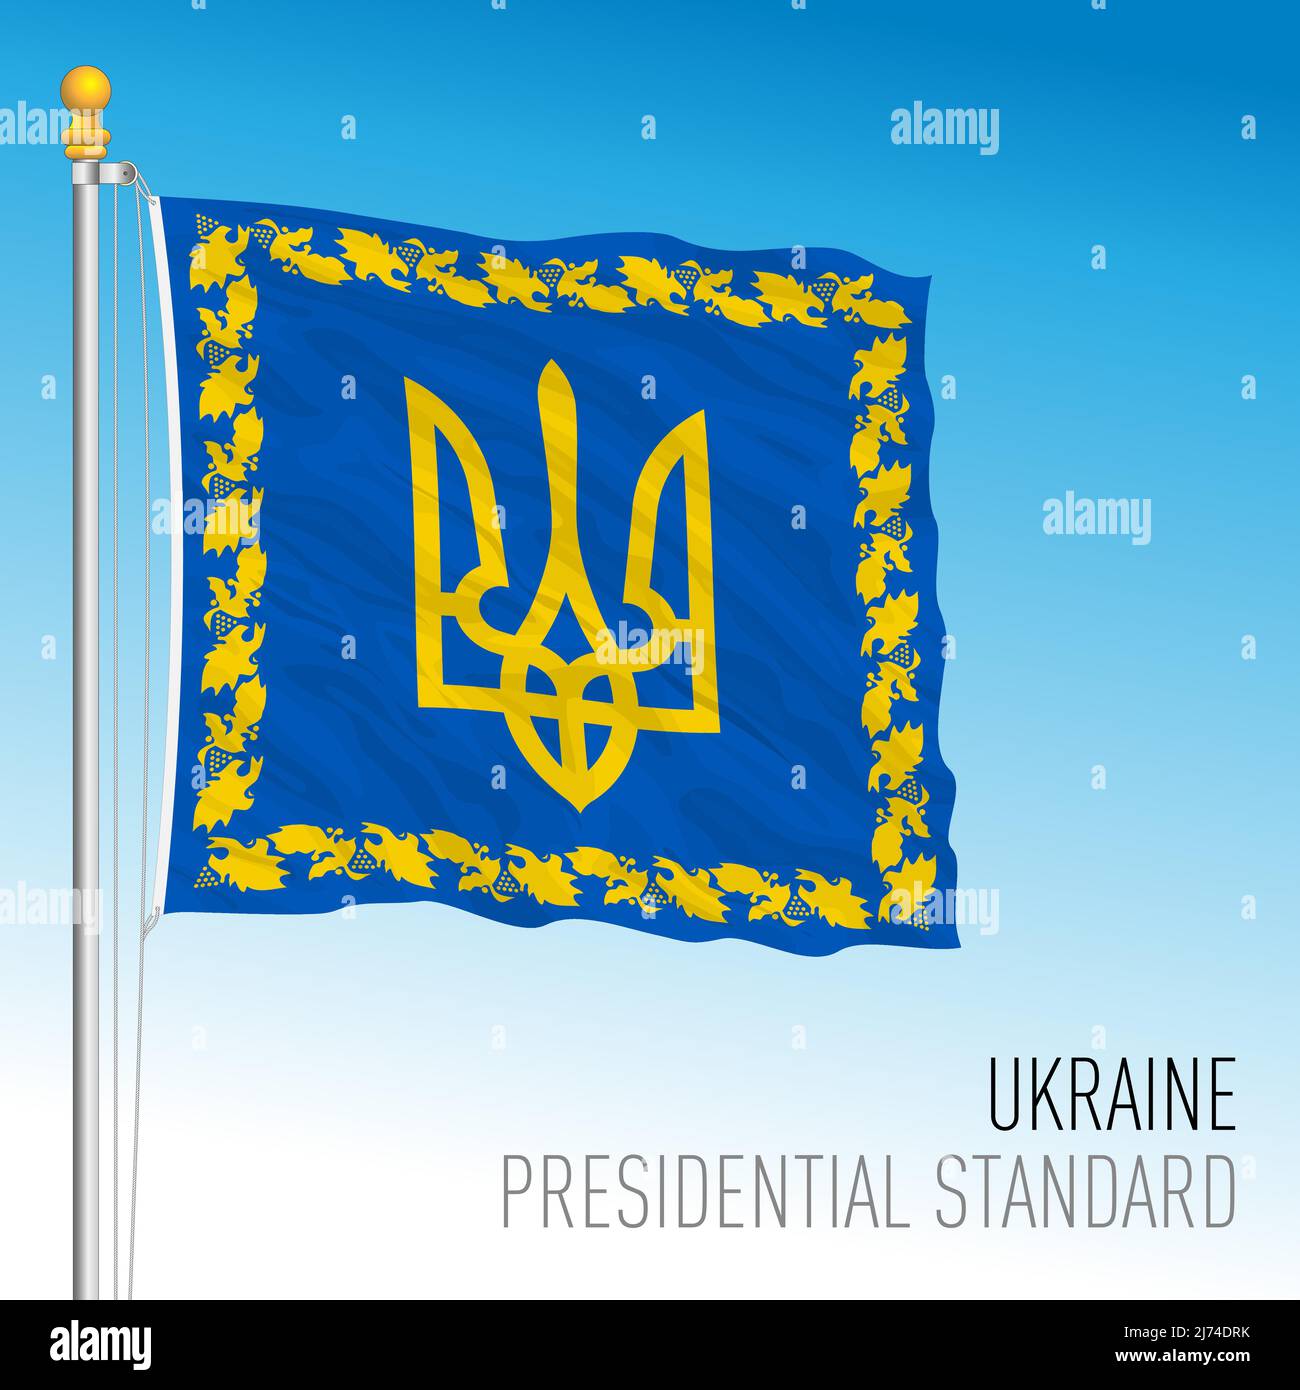 Ukraine, Presidential flag standard, vector illustration Stock Vector